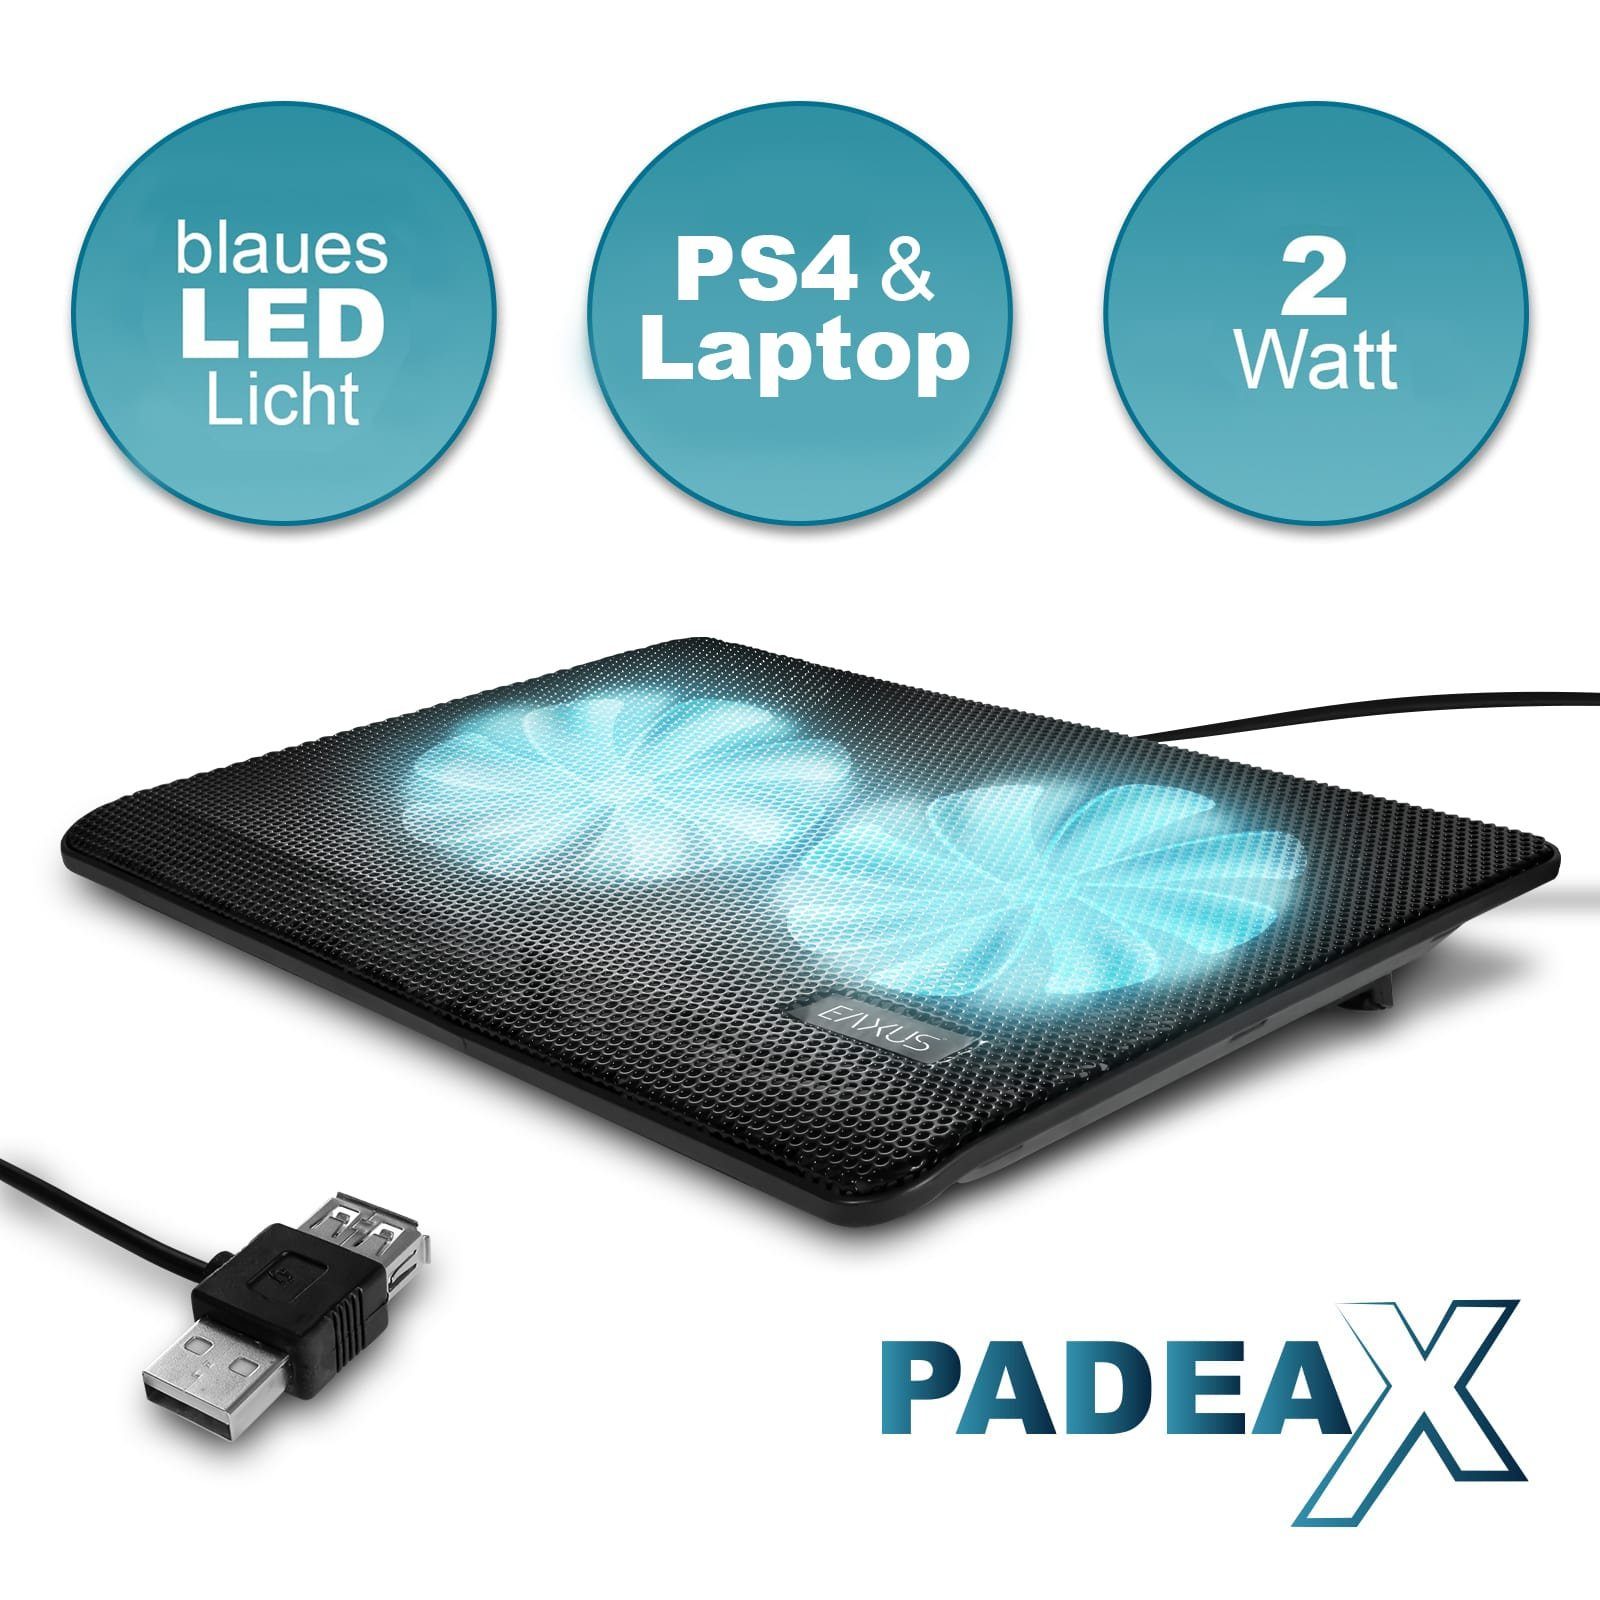 EAXUS Notebook-Kühler Padeax Laptops für 4, & LED-Beleuchtung Kühler, auch PlayStation mit PS5, weitere blauer Konsolen. Lüfter